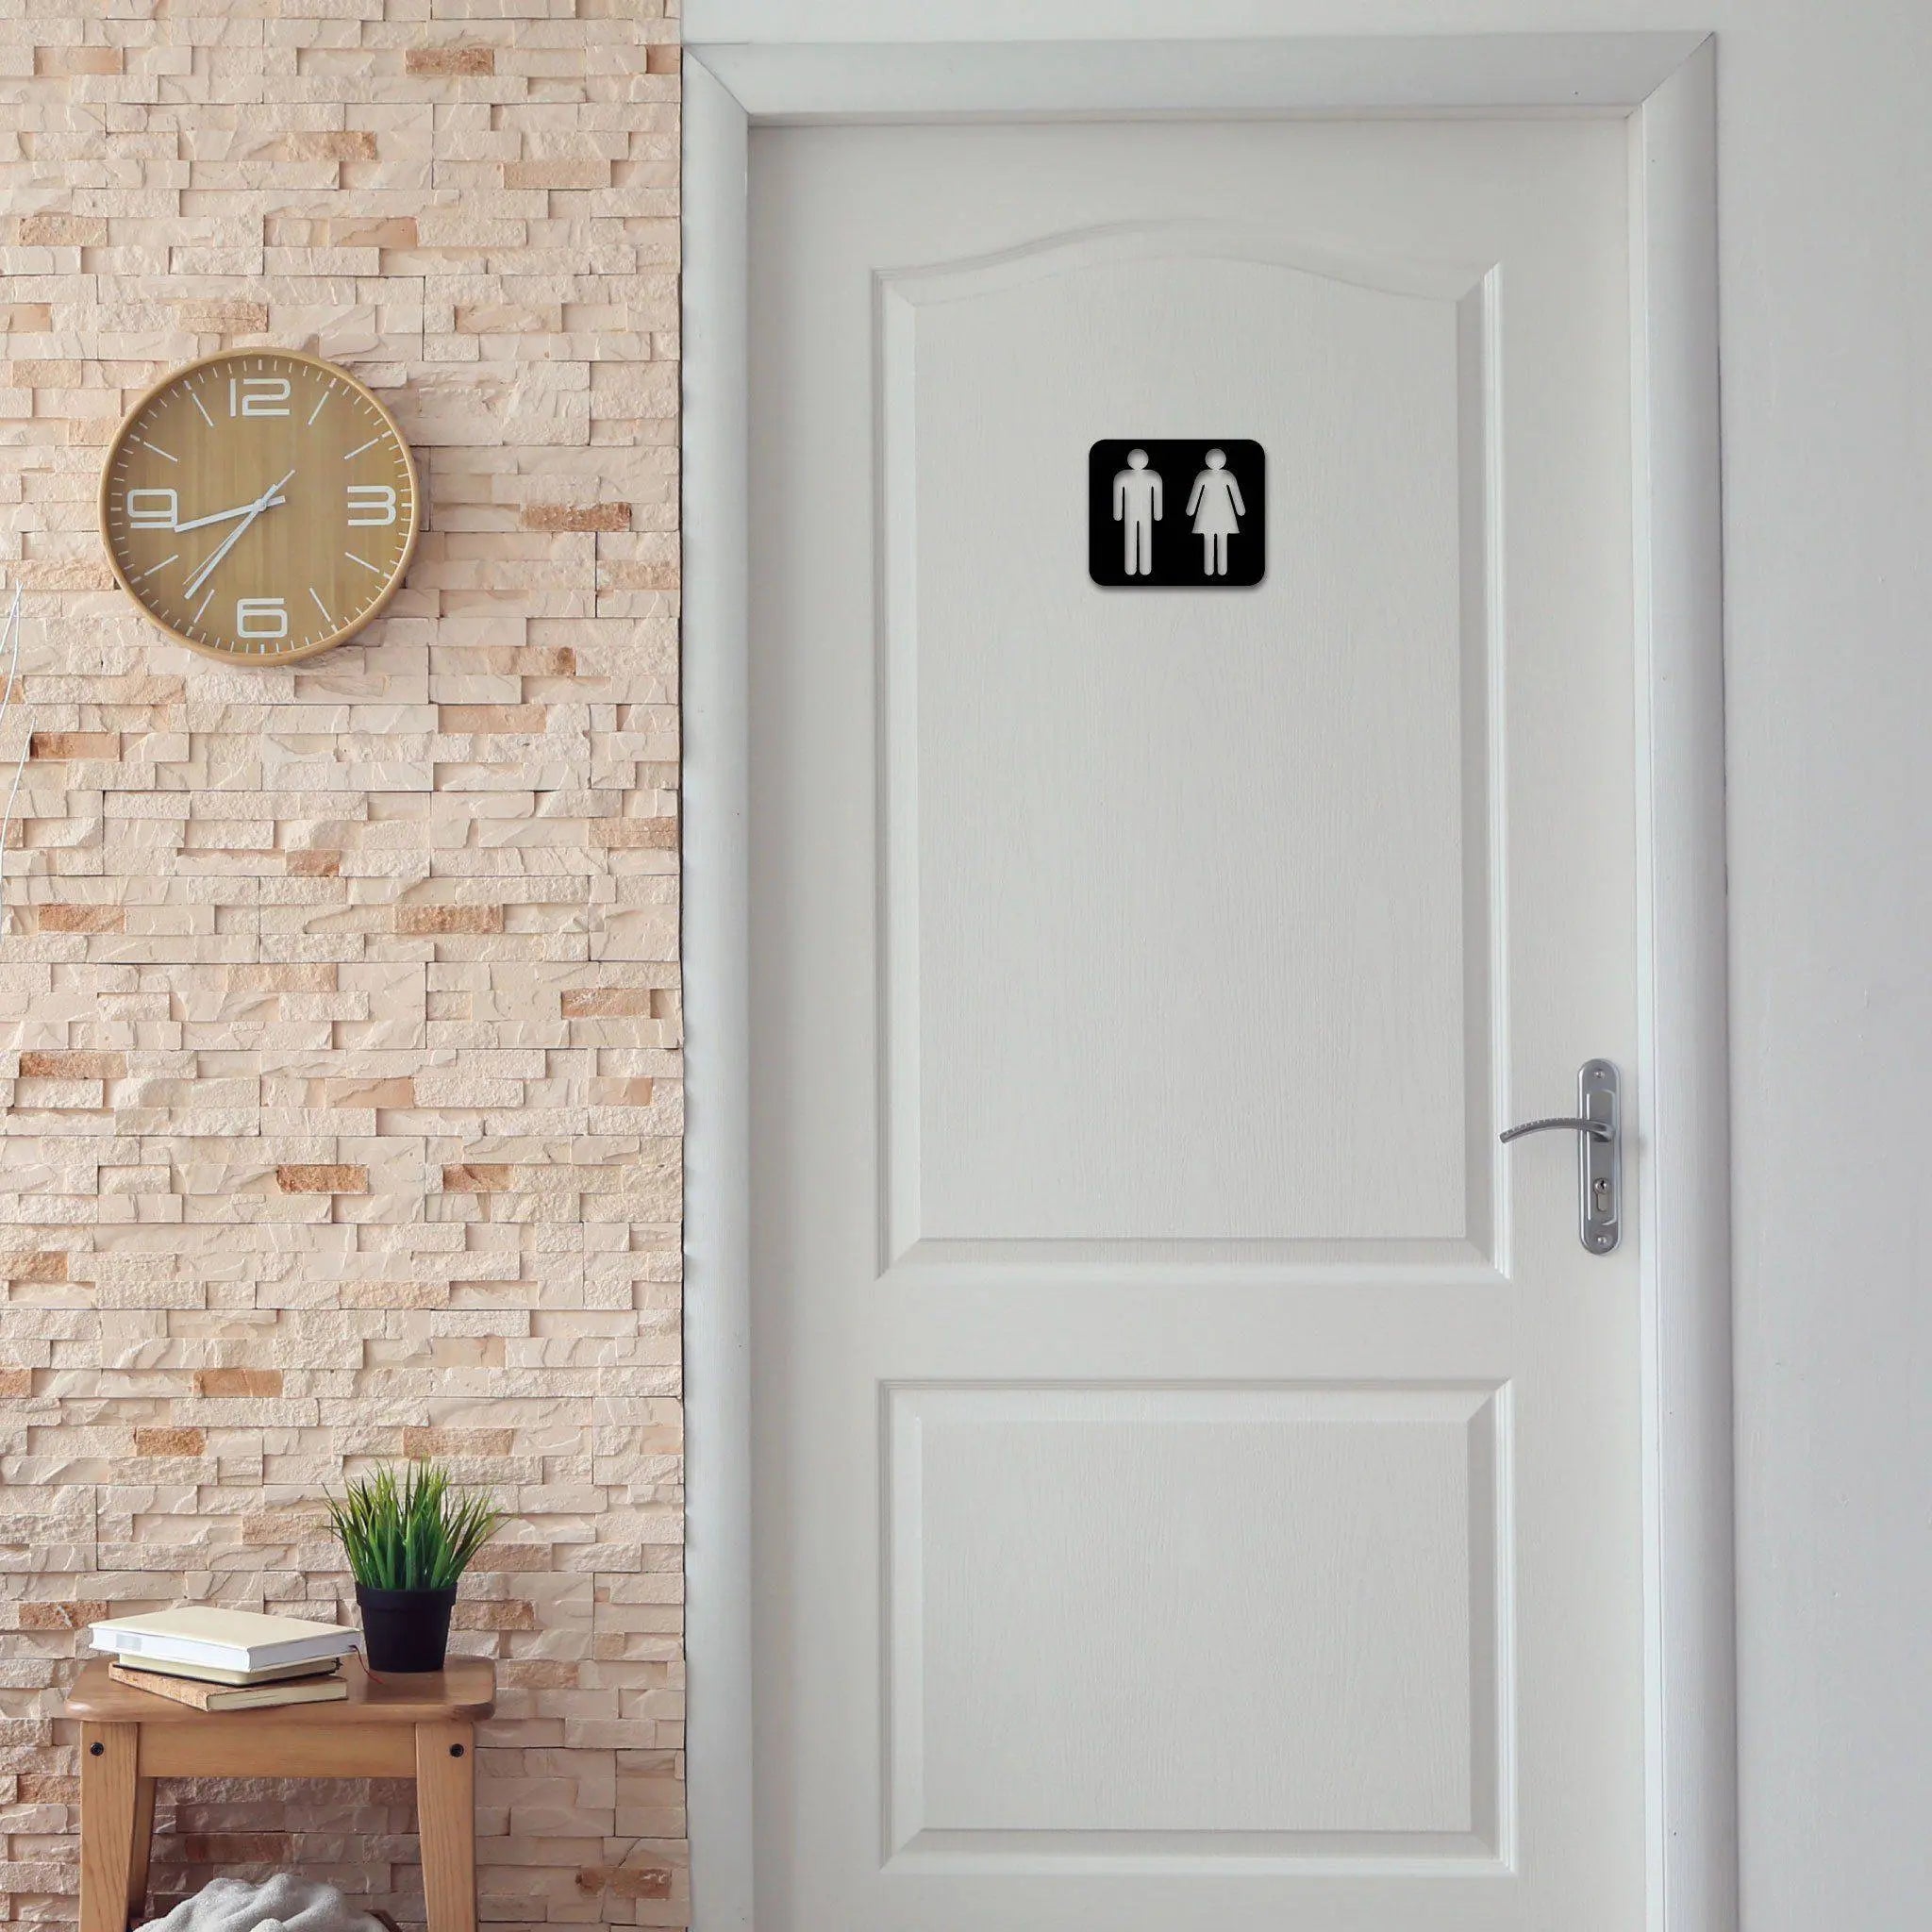 Steelmonks-Metallschild,Toiletten Schild. Standard Wanddekoration erhältlich in verschiednen Größen und Farben.